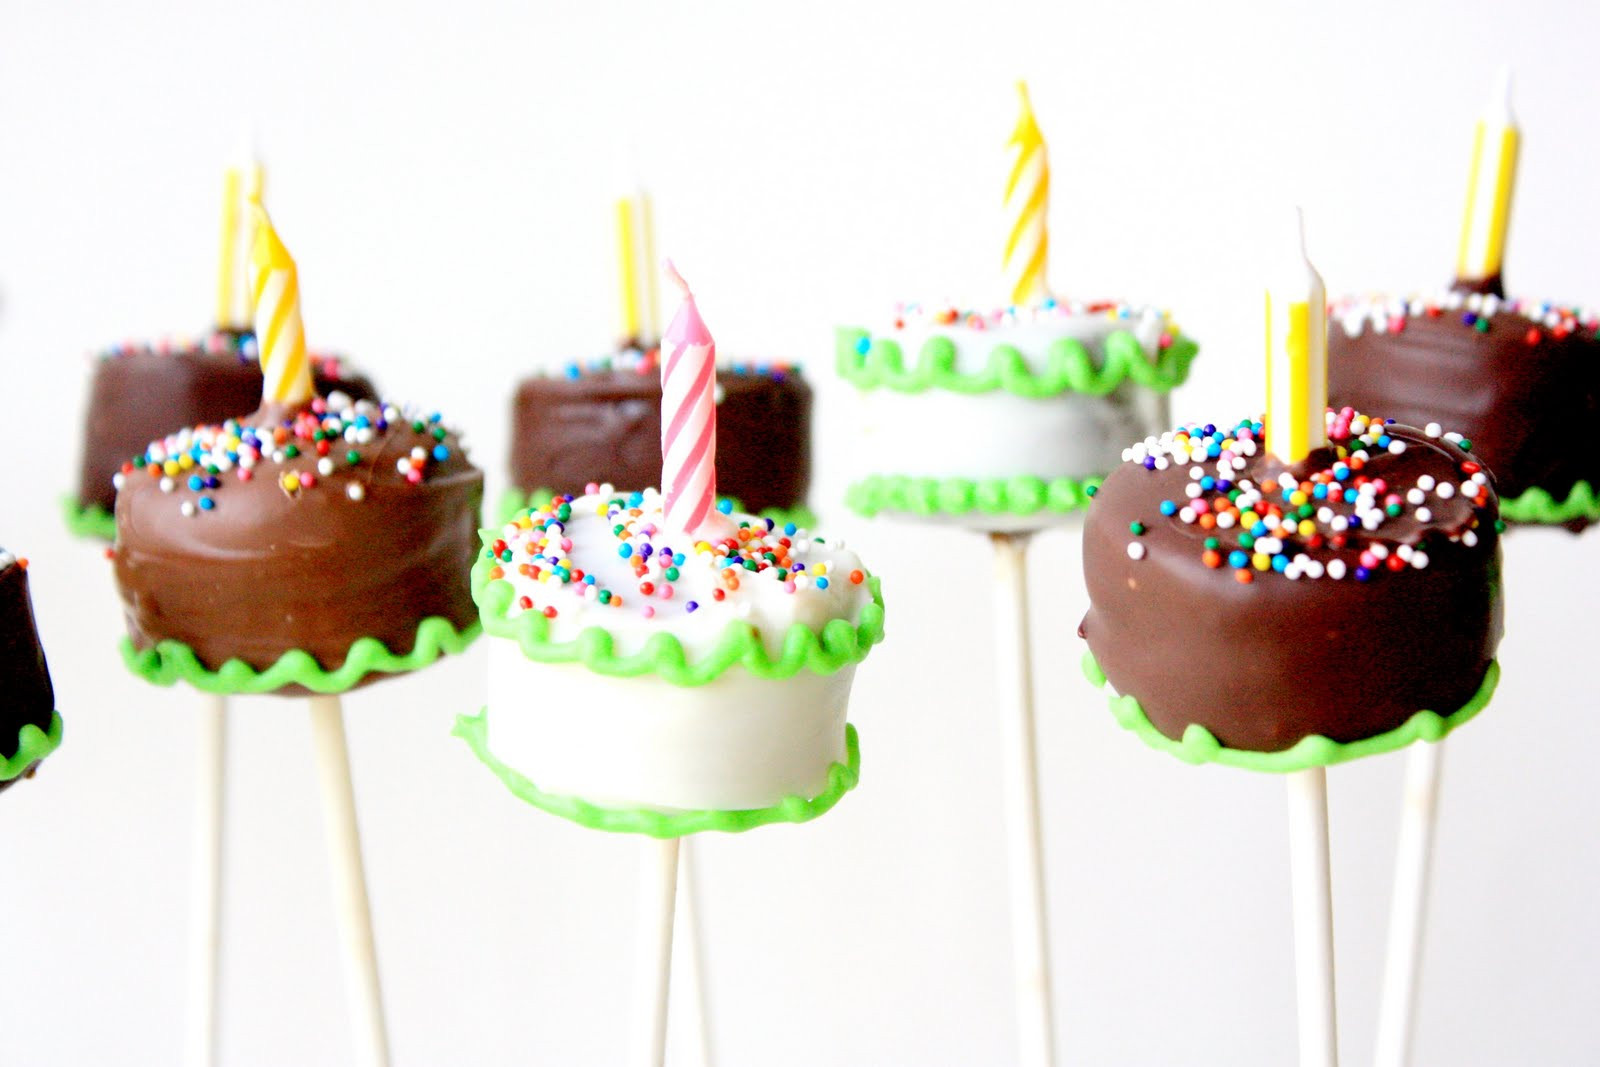 Birthday Cake Pops Recipe
 Munchkin Munchies Birthday Cake Brownie Pops